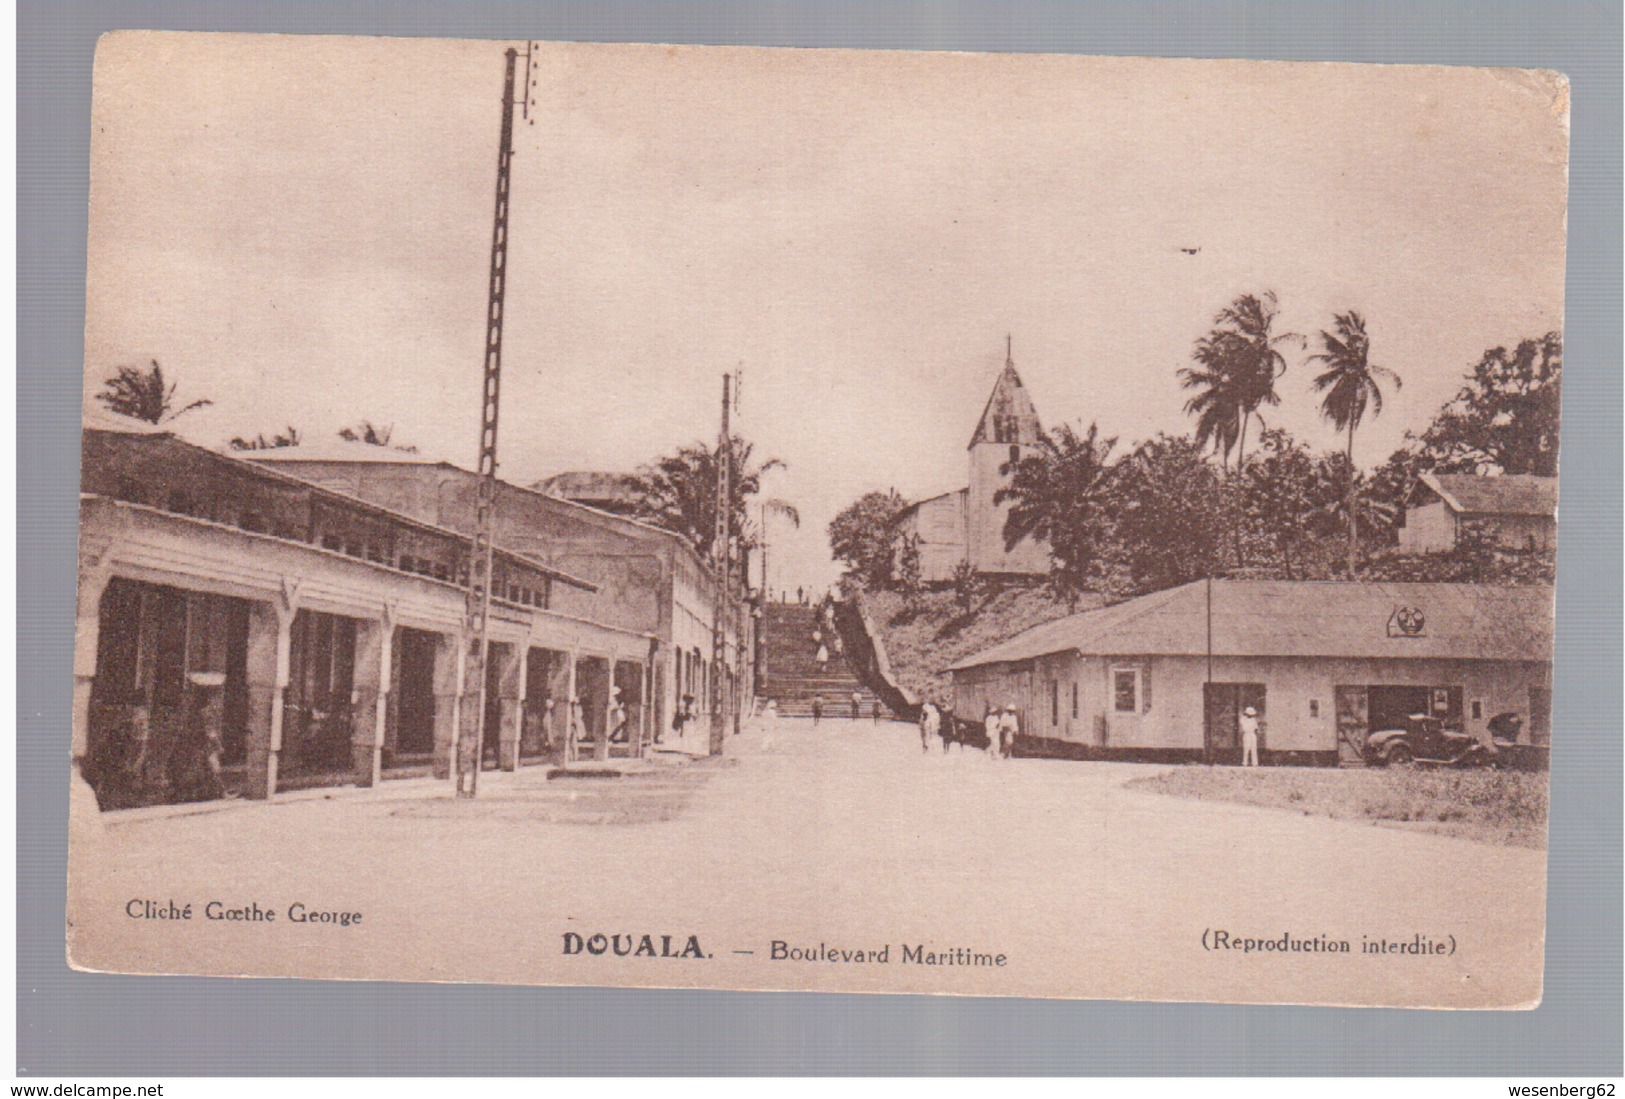 CAMEROUN Kamerun Douala - Boulevard Maritime Ca 1920 OLD POSTCARD - Cameroon